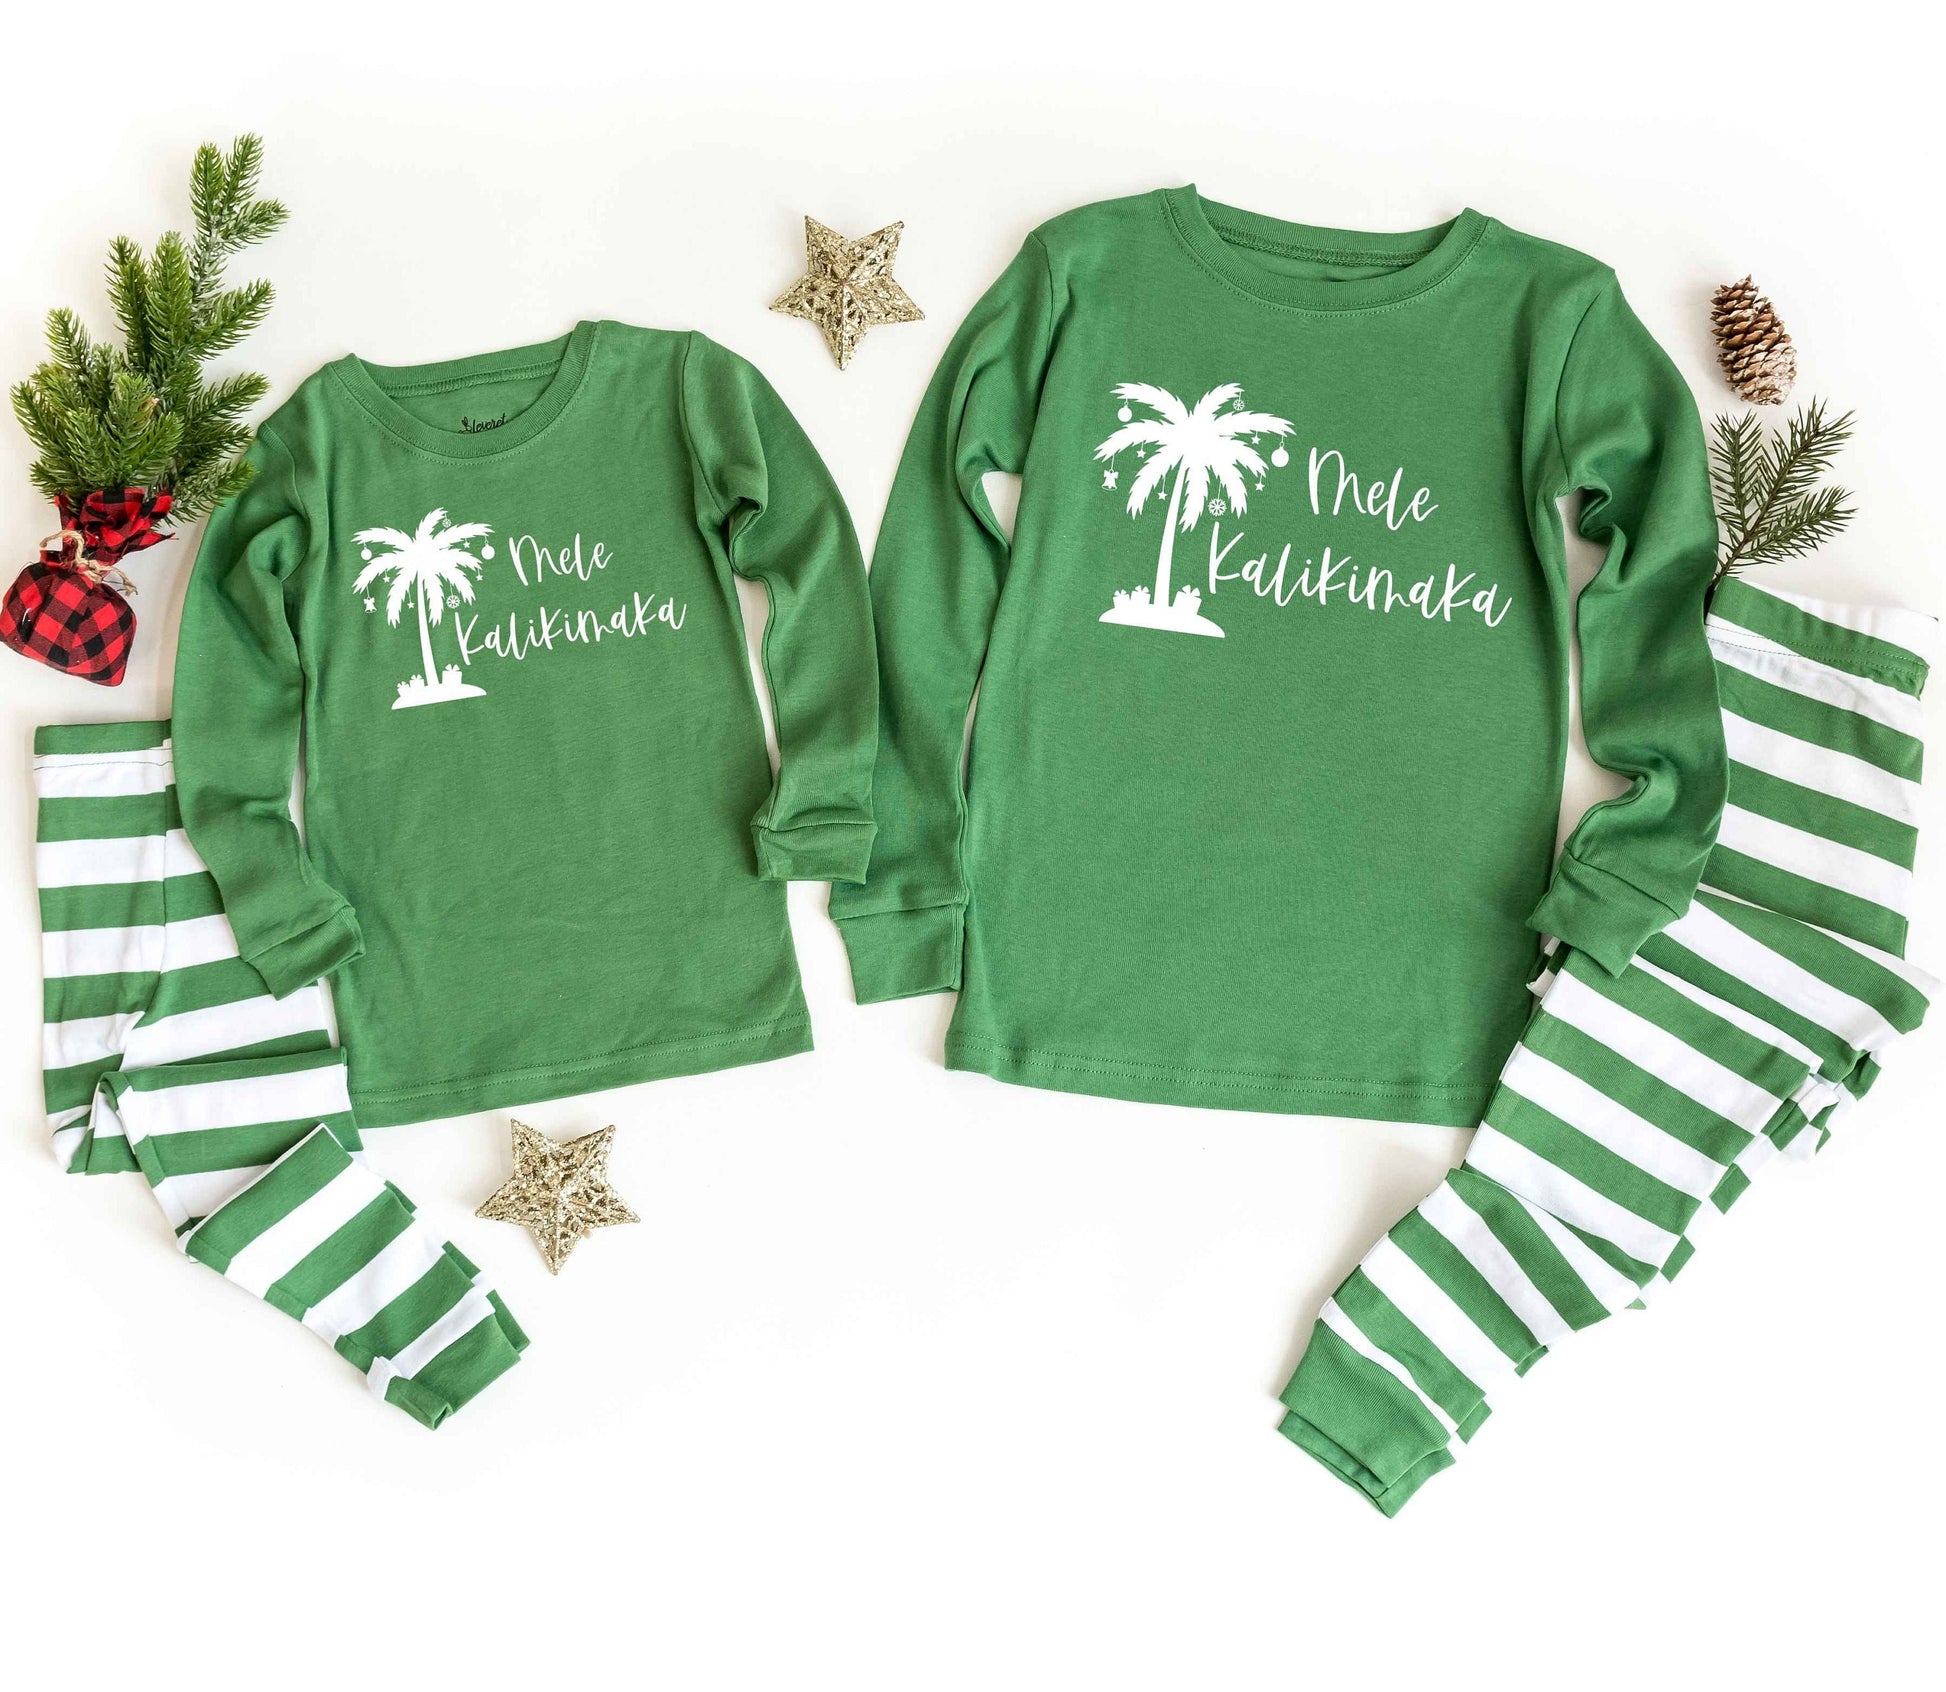 Mele Kalikimaka Green Top Family Christmas Pajamas - beach christmas pjs - christmas in hawaii